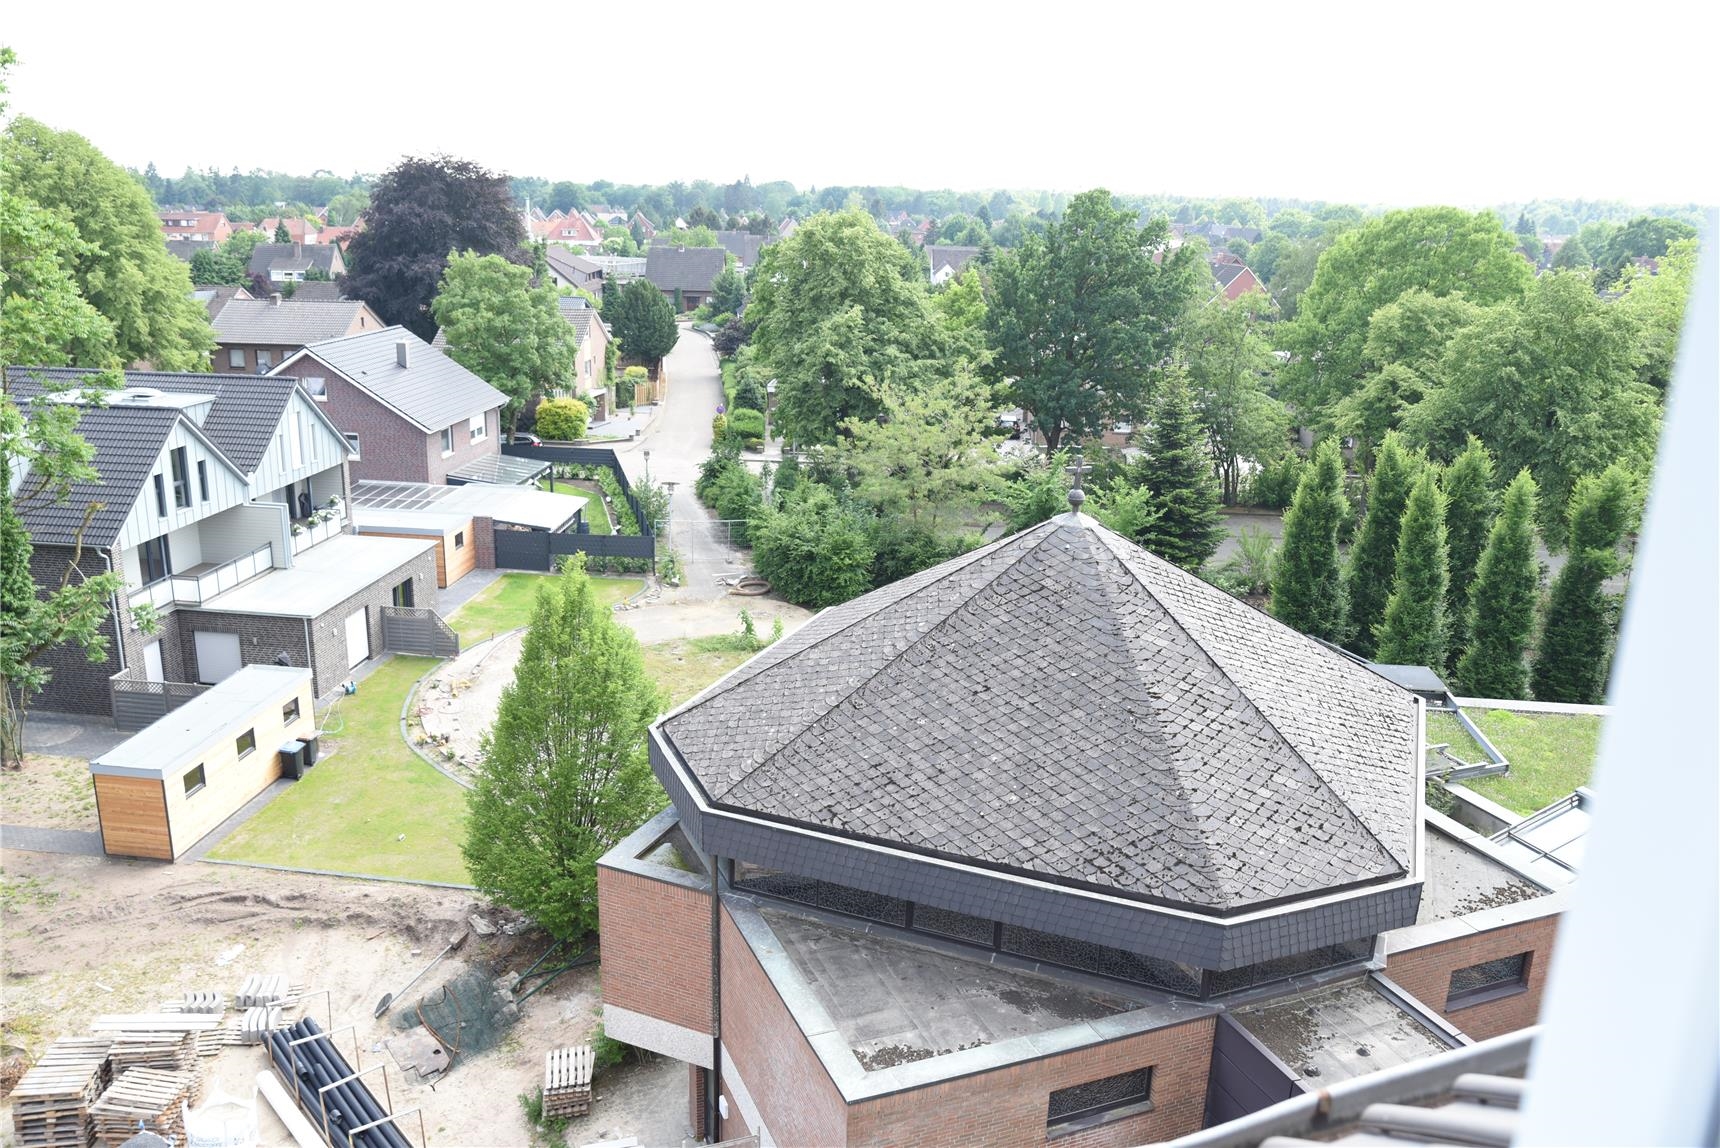 Baufortschritt Nordhorn Pflegezentrum Mai 2018 (Franziska Kückmann)